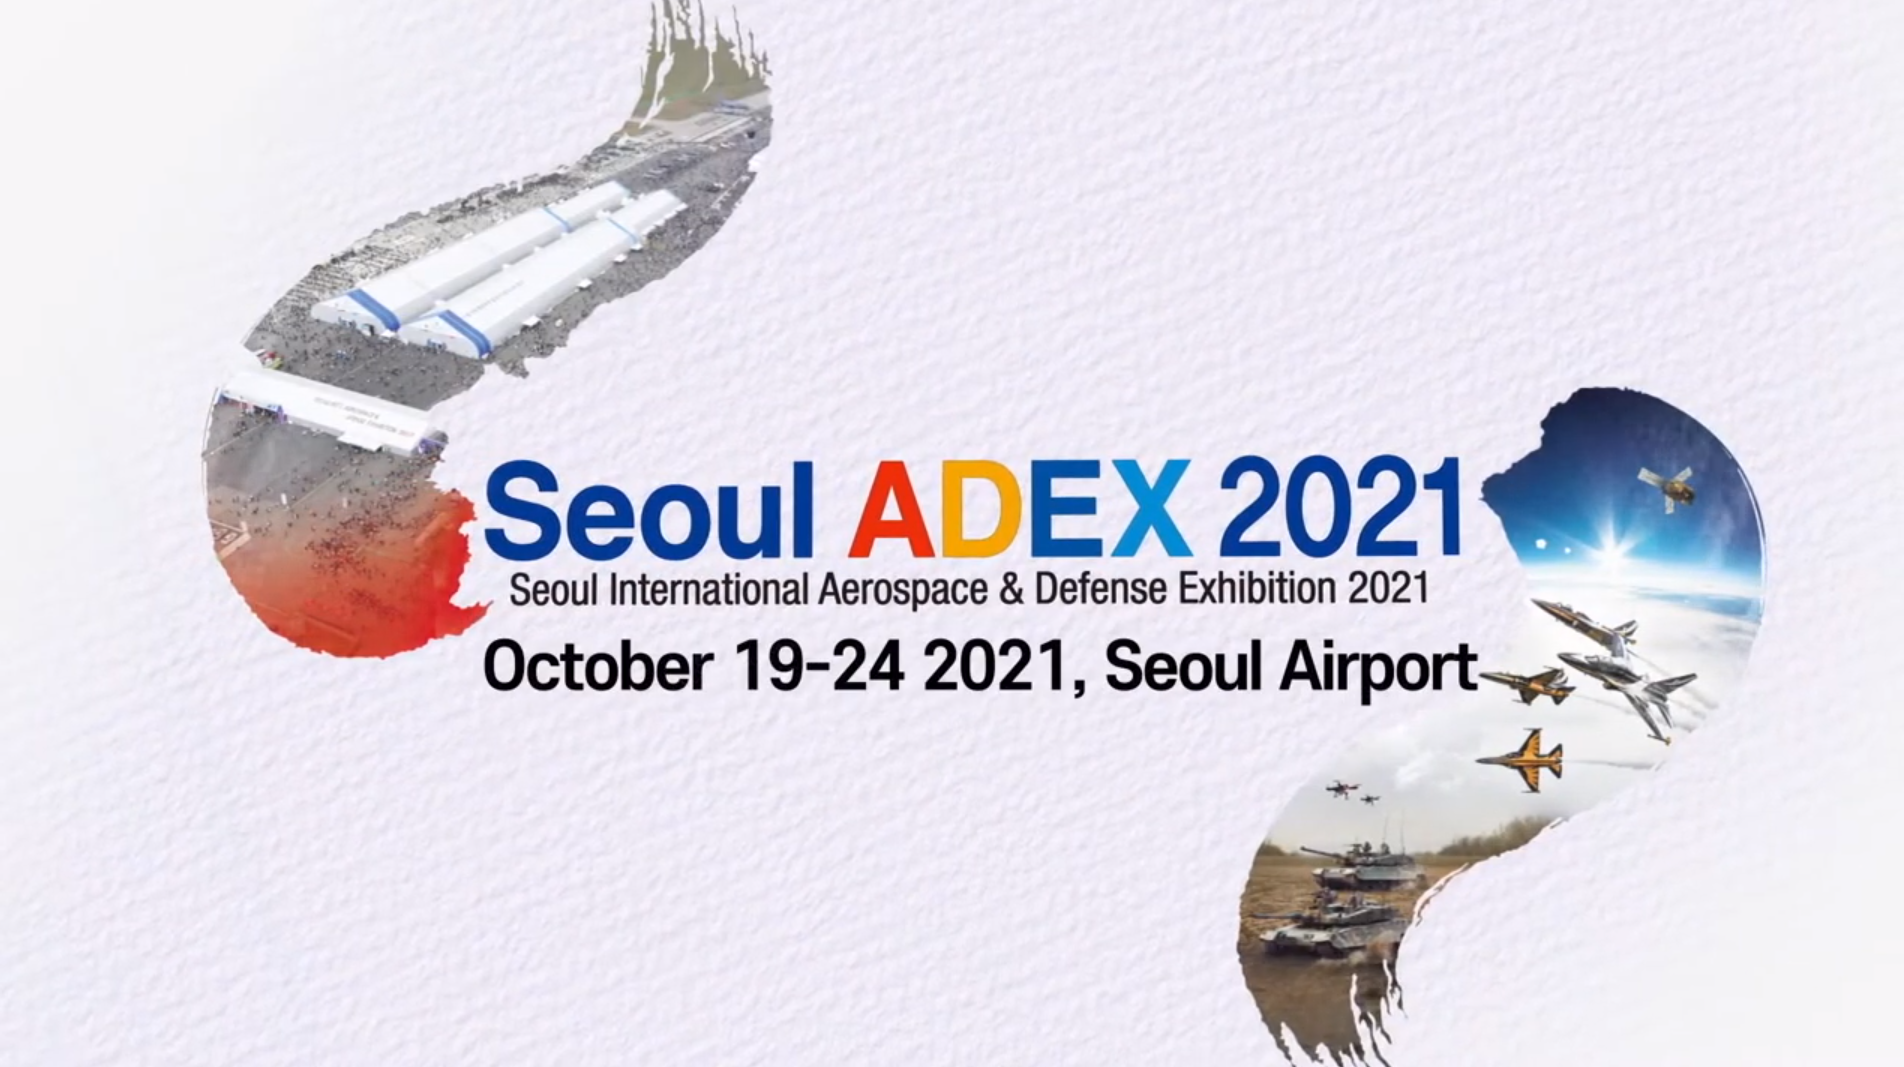 Seoul ADEX 2021